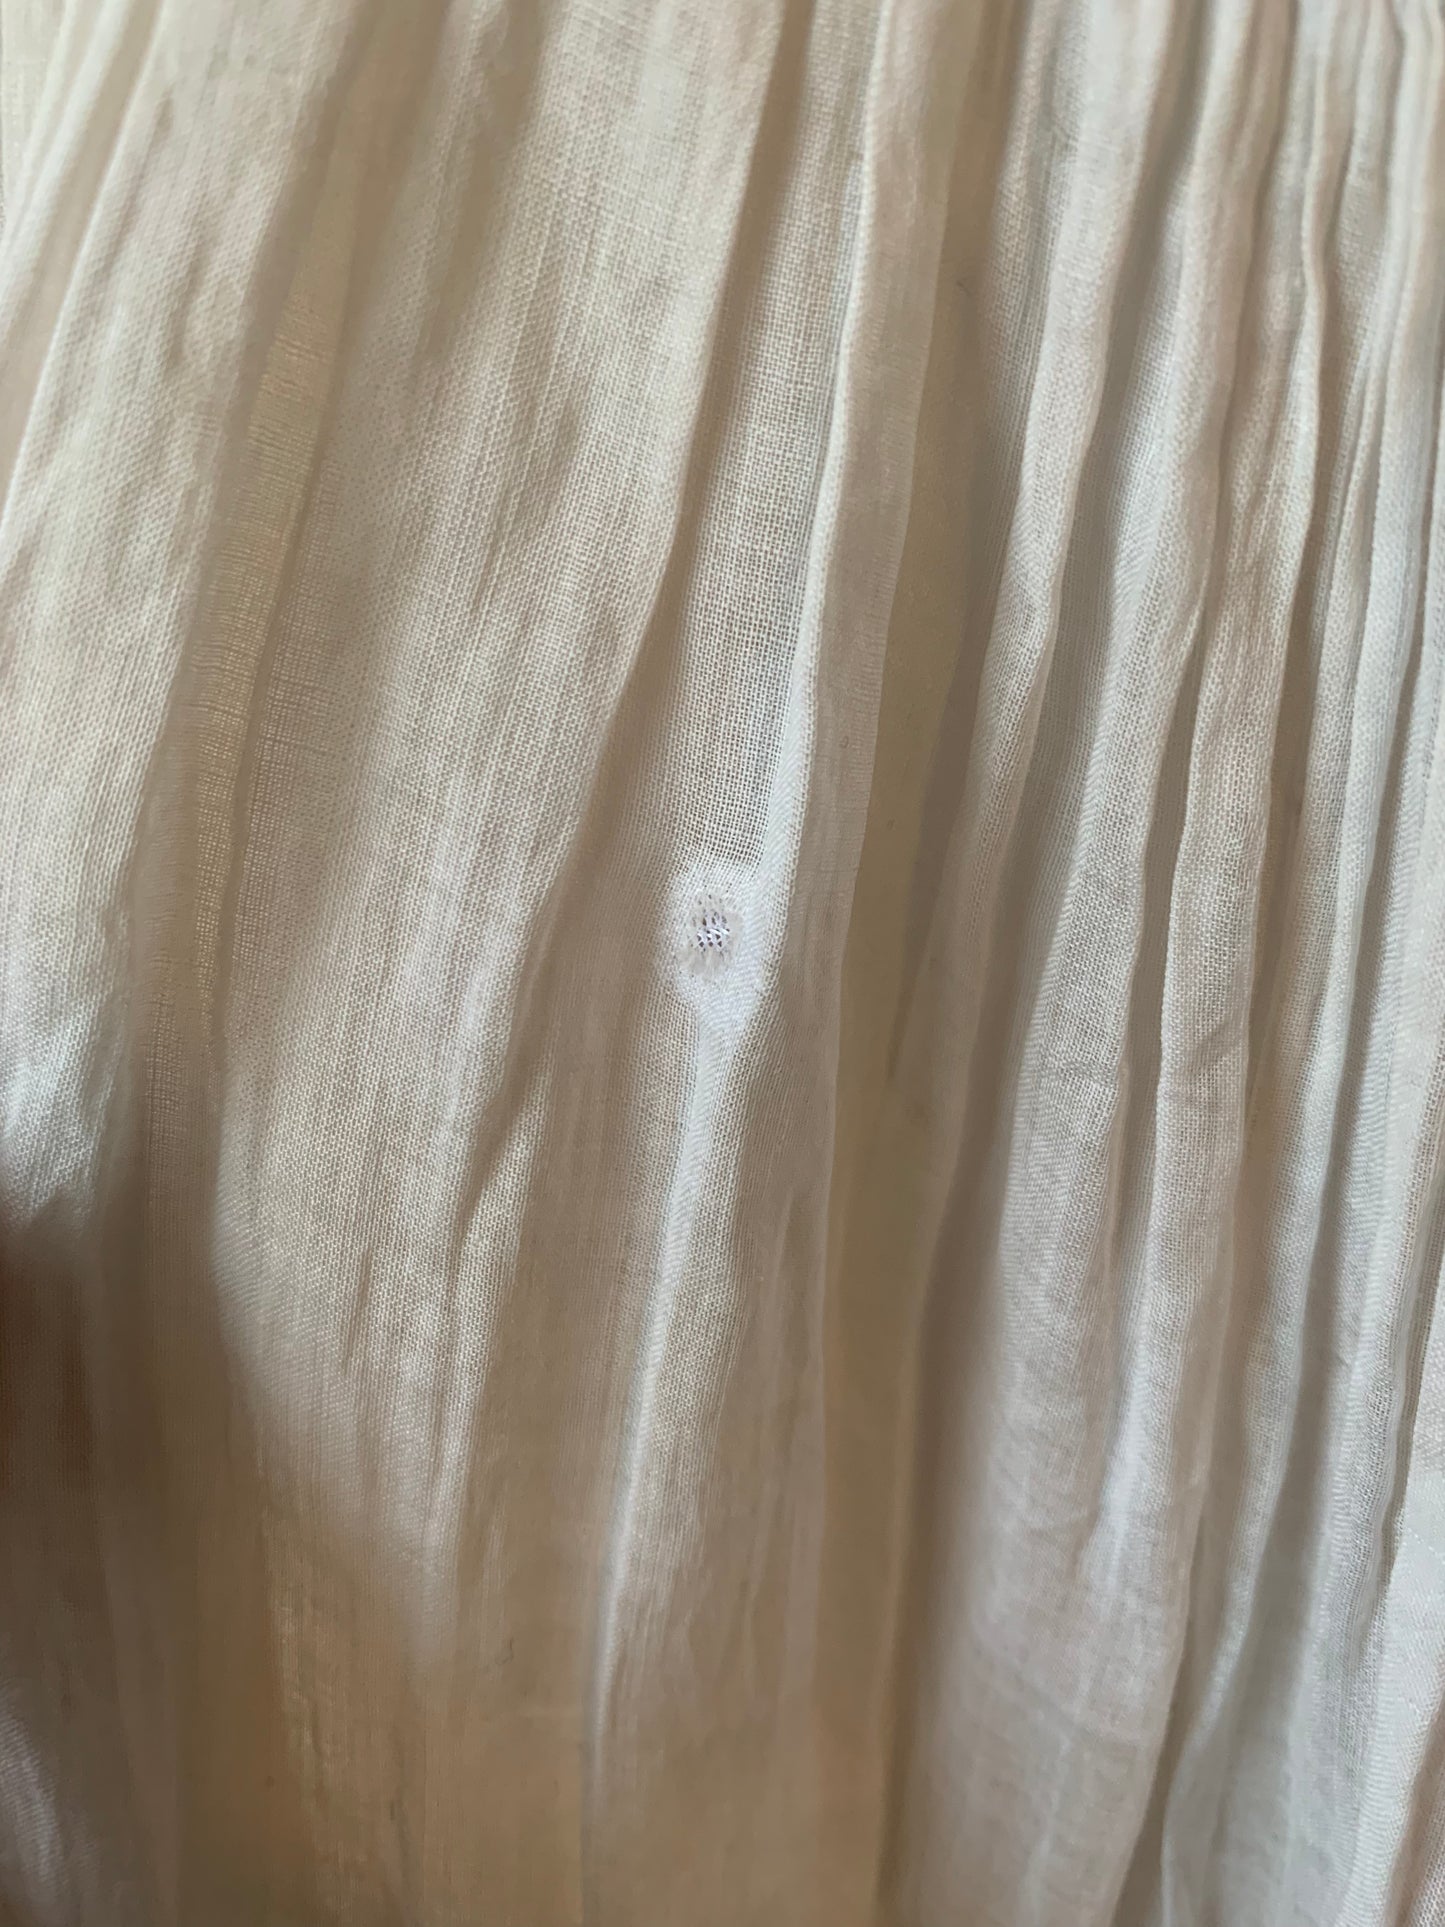 White Lace Edwardian Lawn Dress (XS)